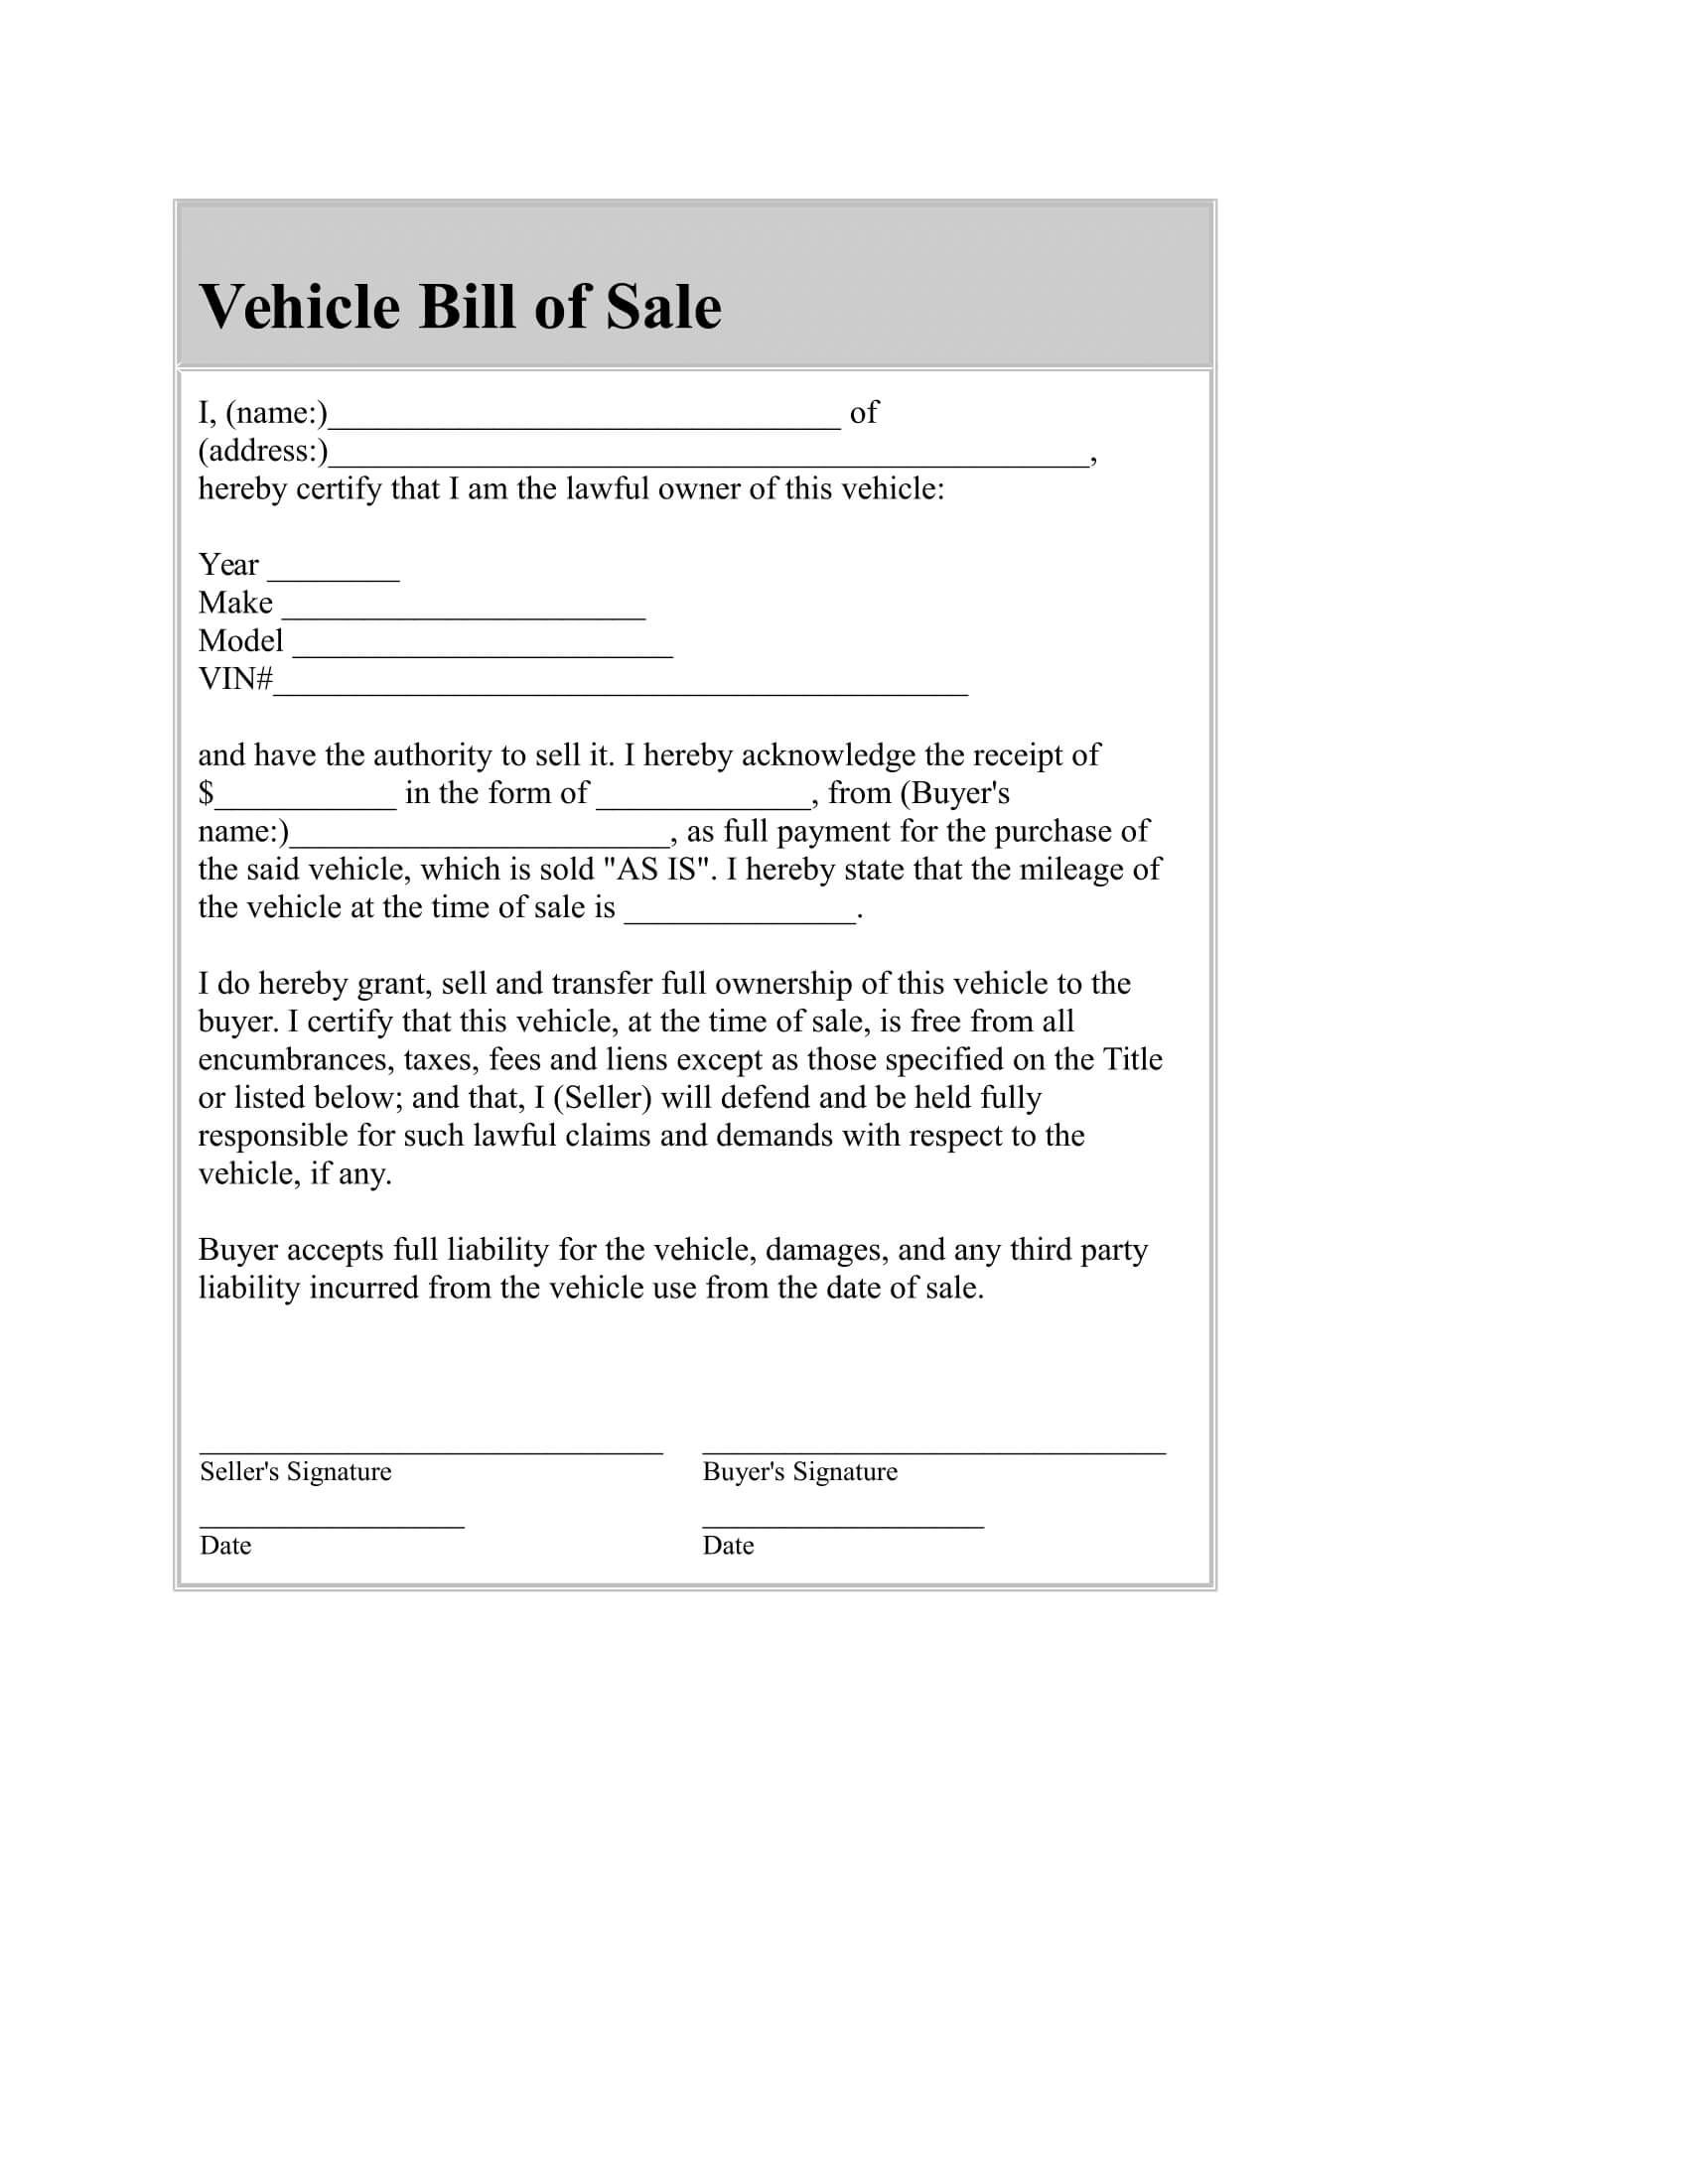 040 Automotive Bill Of Sale Template Word Ideas Car Free Regarding Vehicle Bill Of Sale Template Word